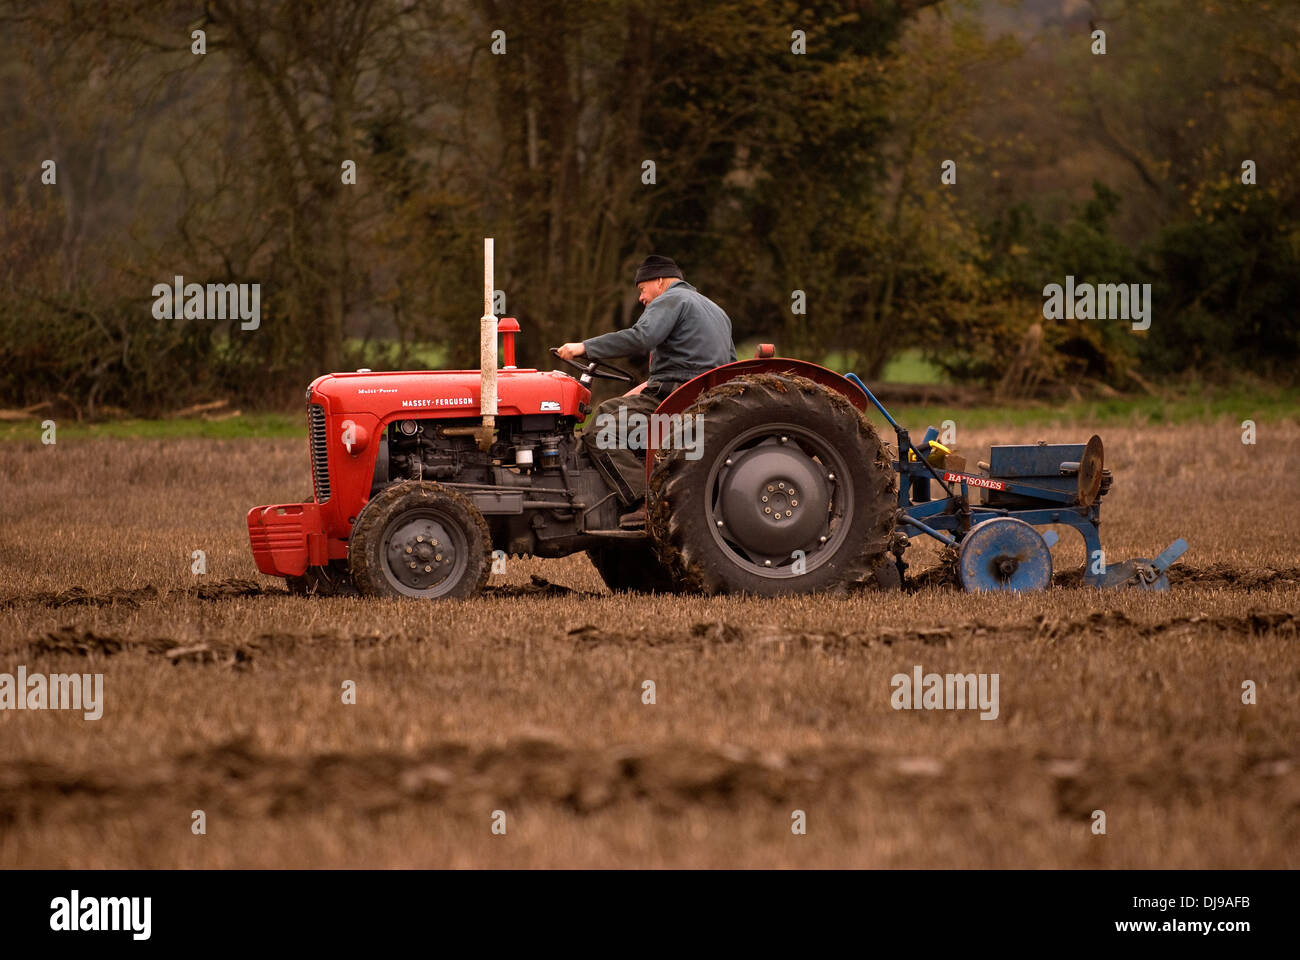 Nord est hants associazione agricola annuale match di aratura in corso, wyck farm, hampshire, Regno Unito. Foto Stock